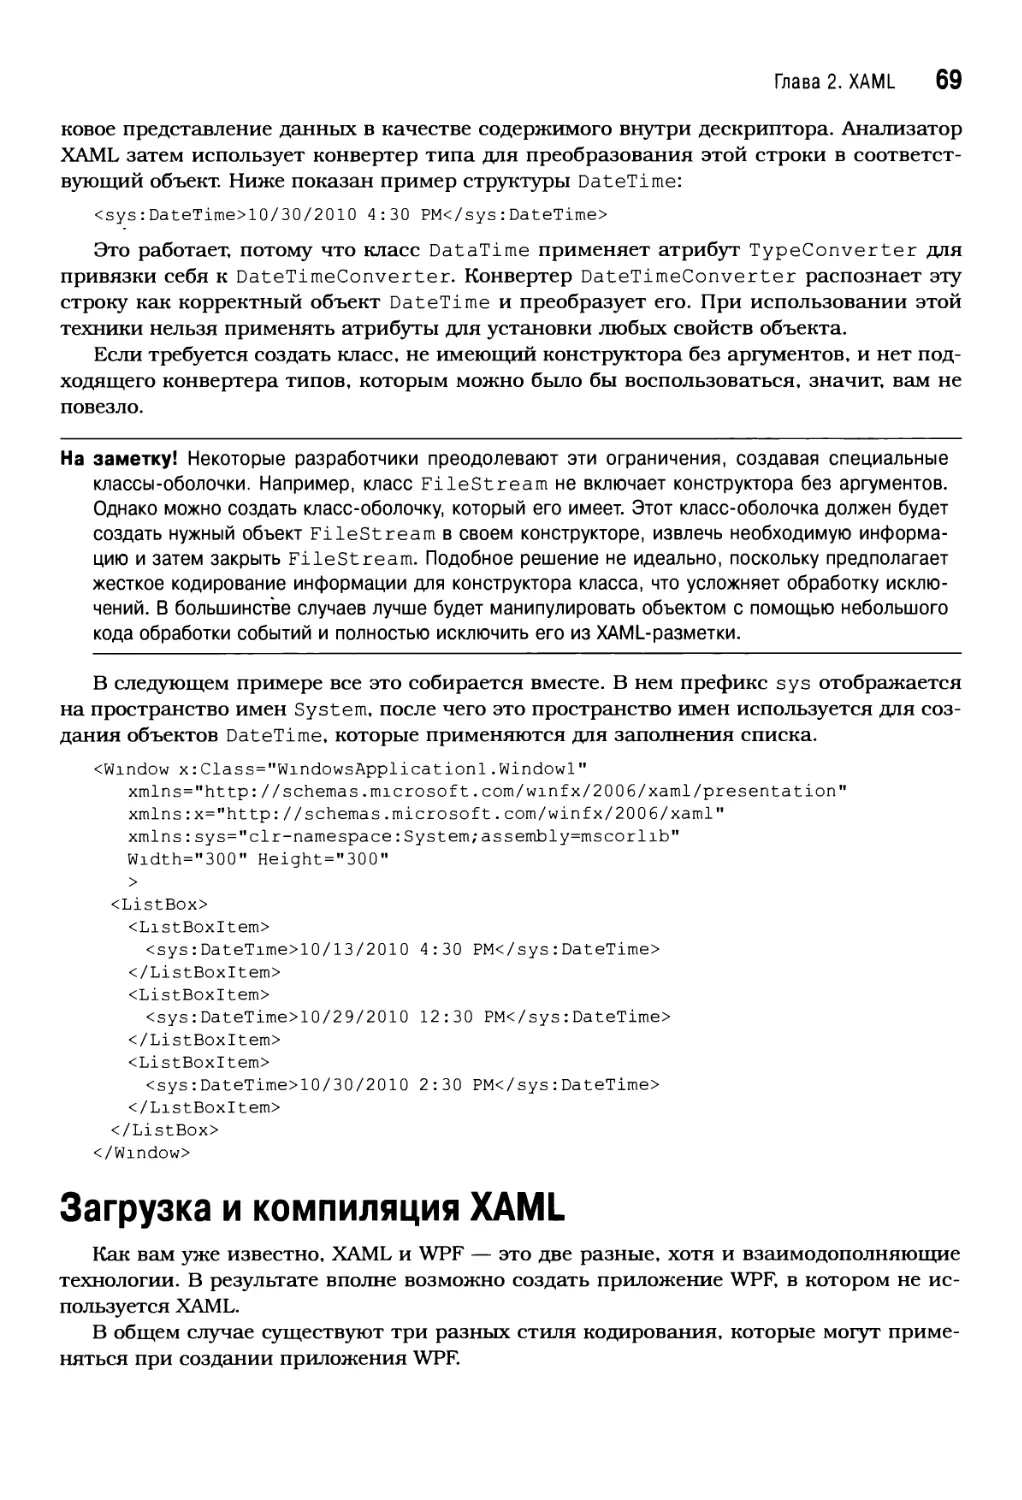 Загрузка и компиляция XAML